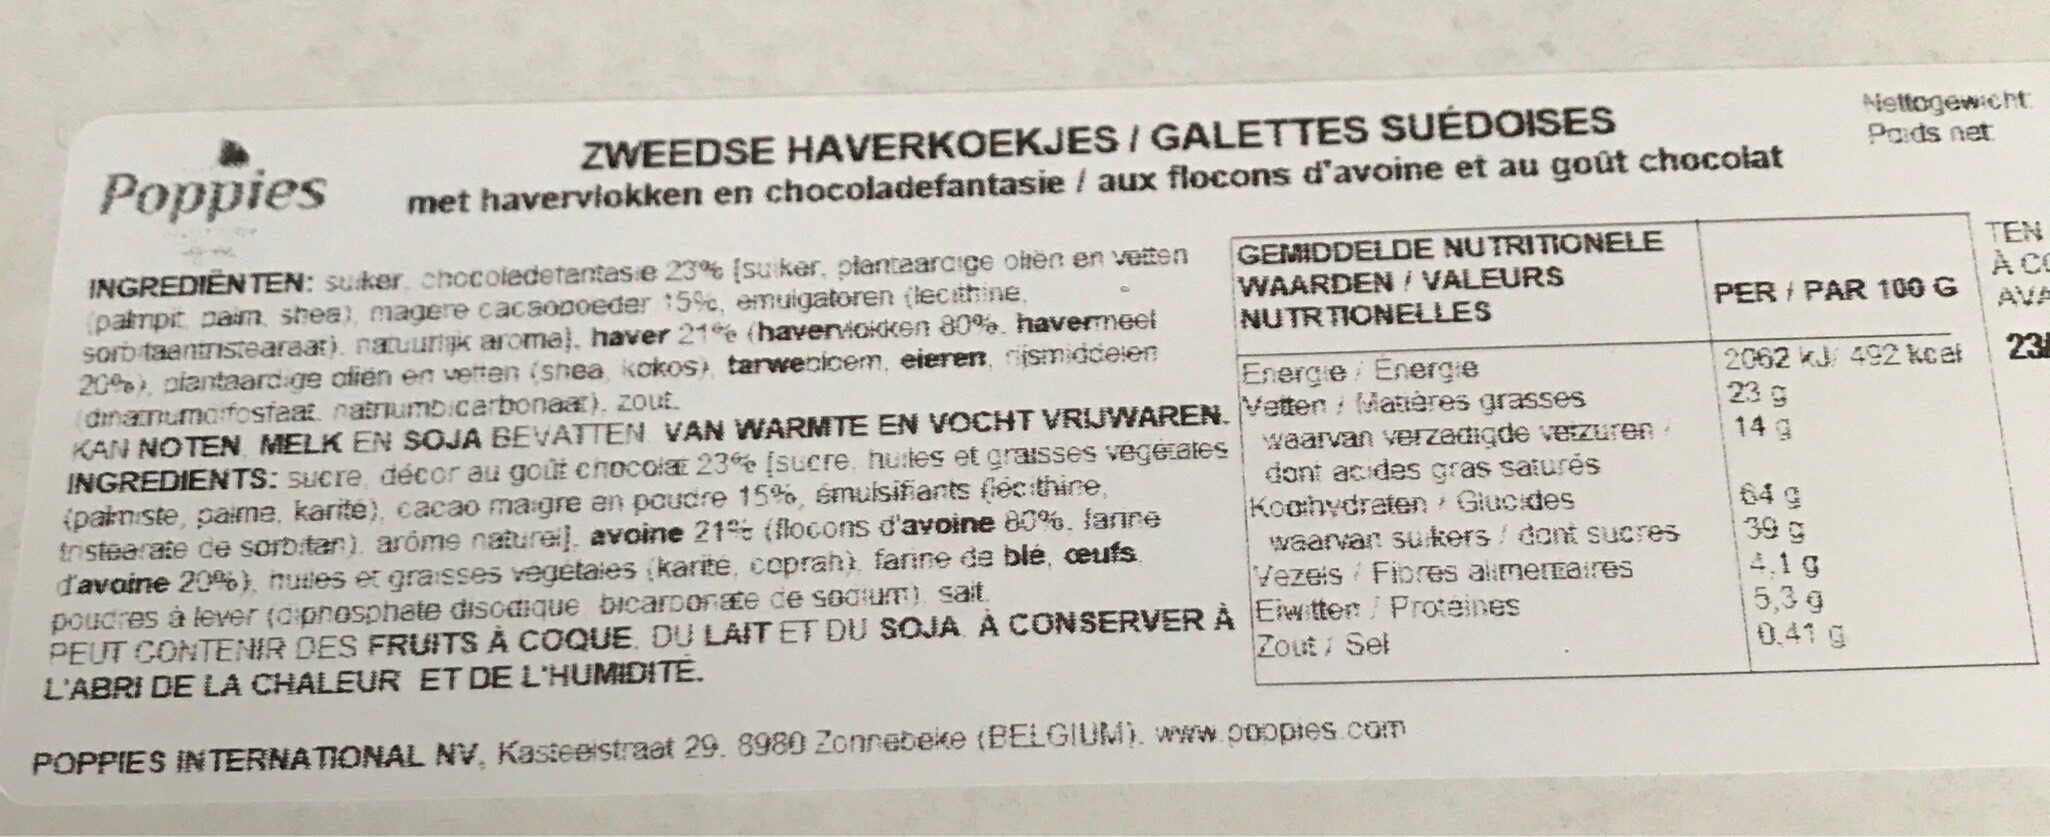 Galettes suédoises - Tableau nutritionnel